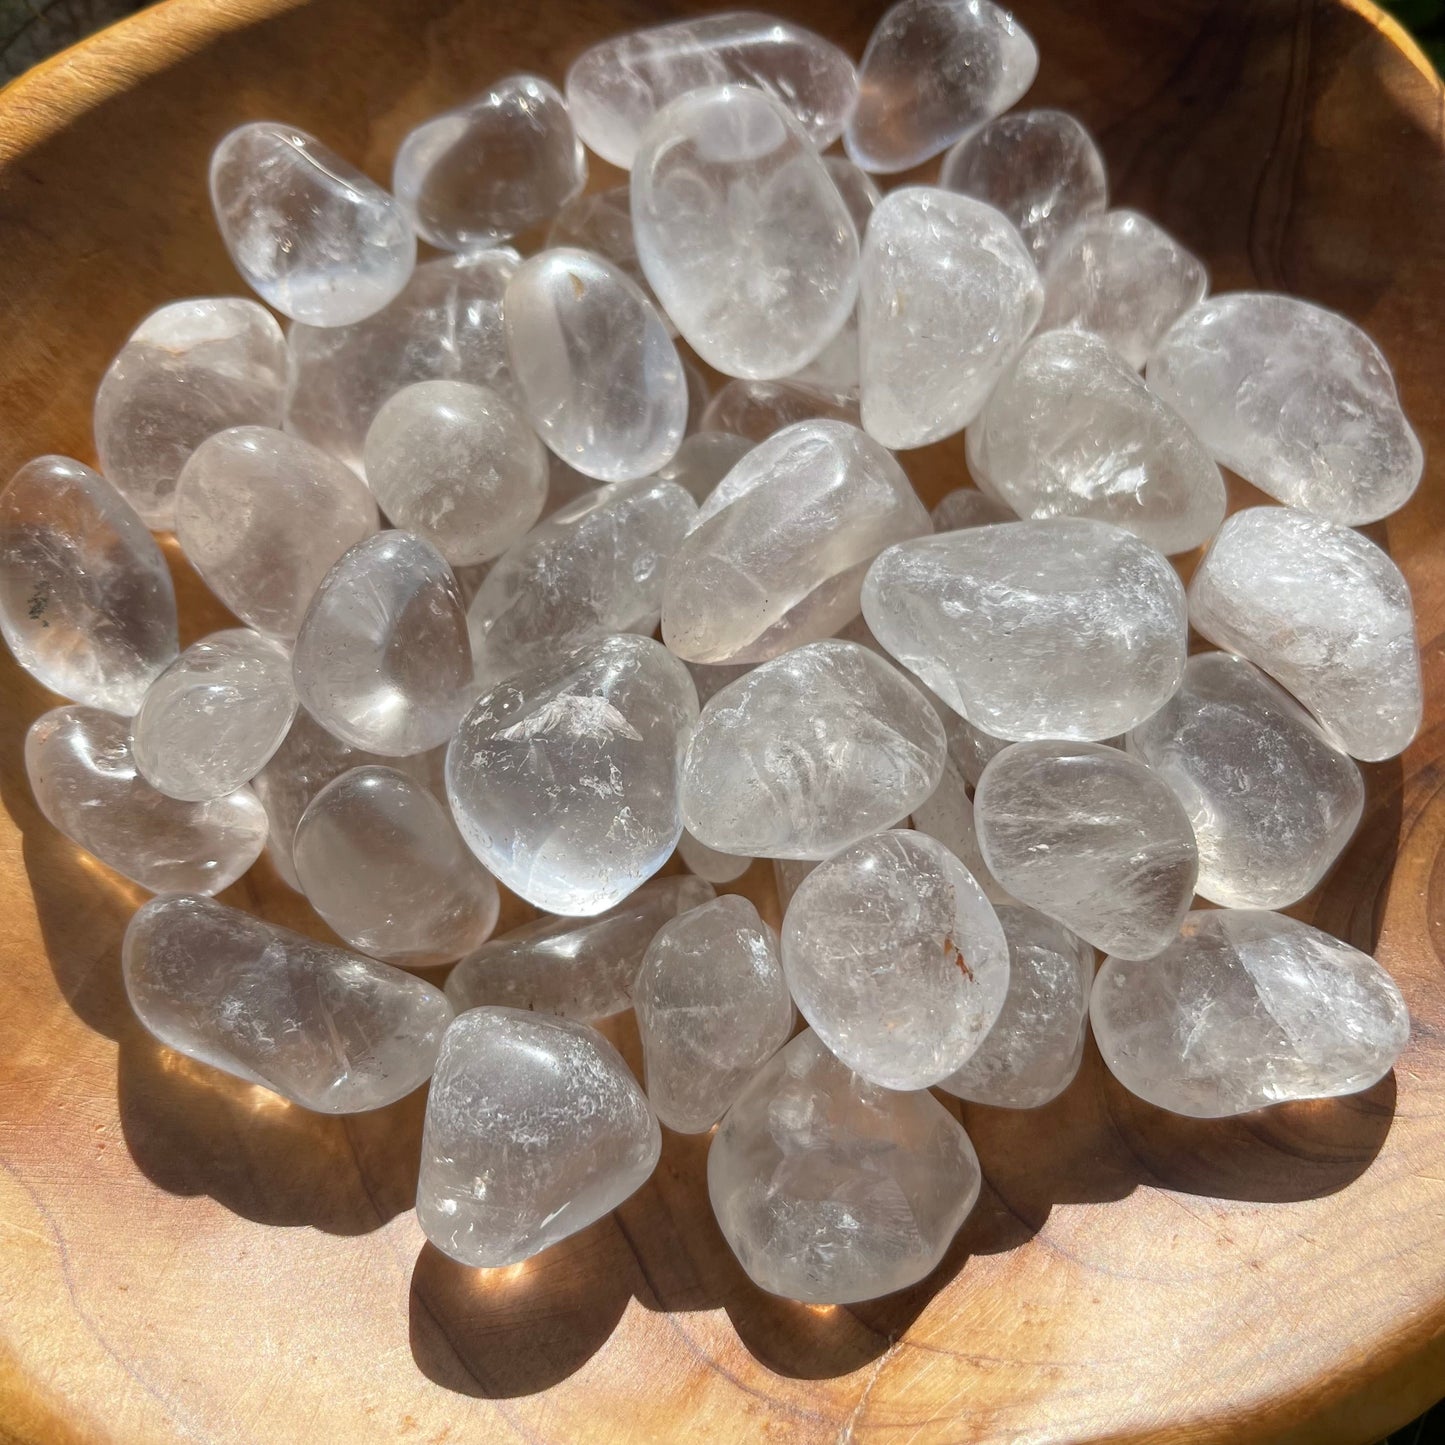 Small Tumbled Clear Quartz Crystal